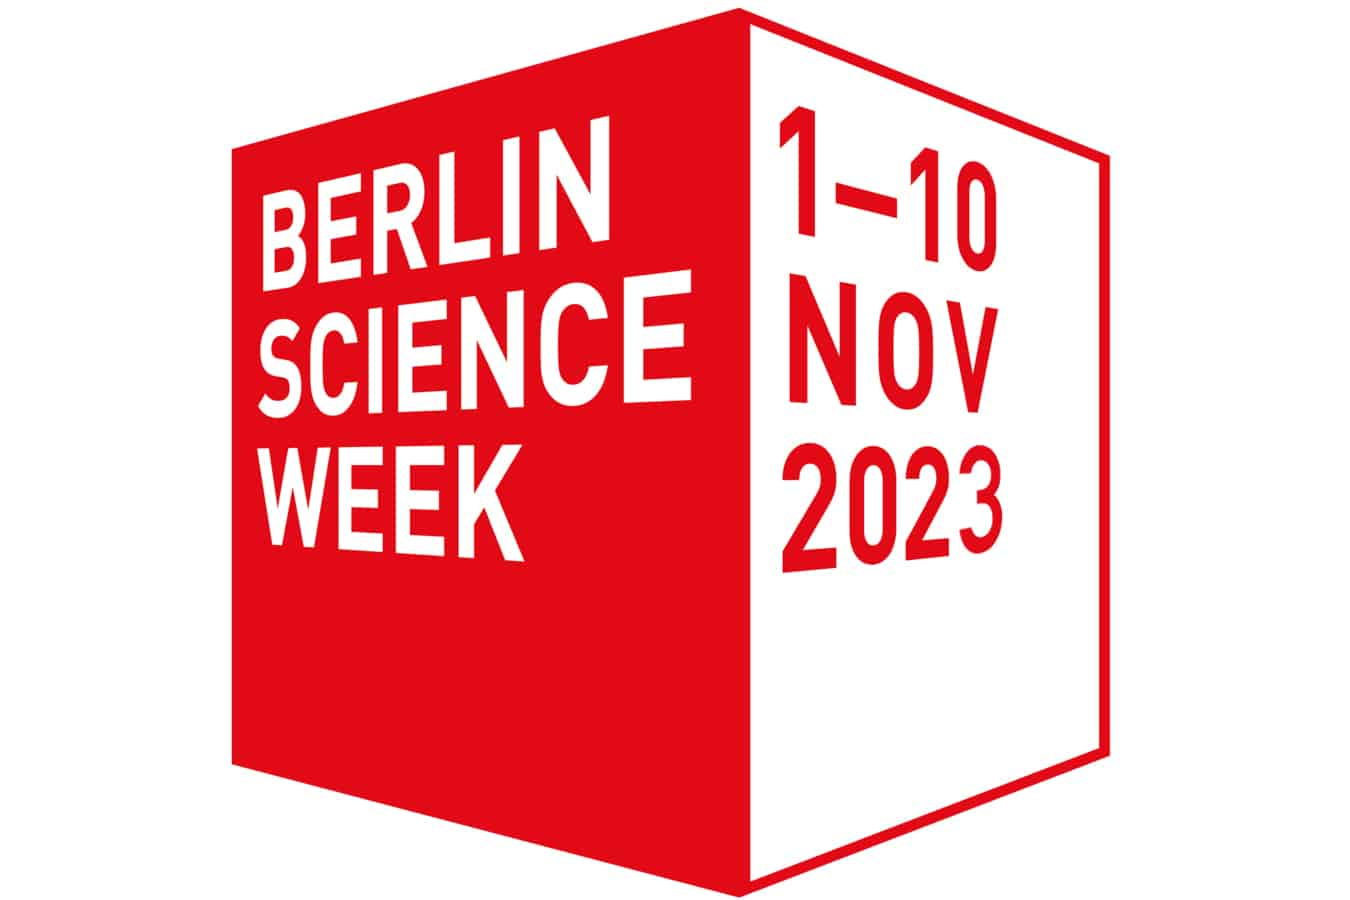 Berlin Science Week logo